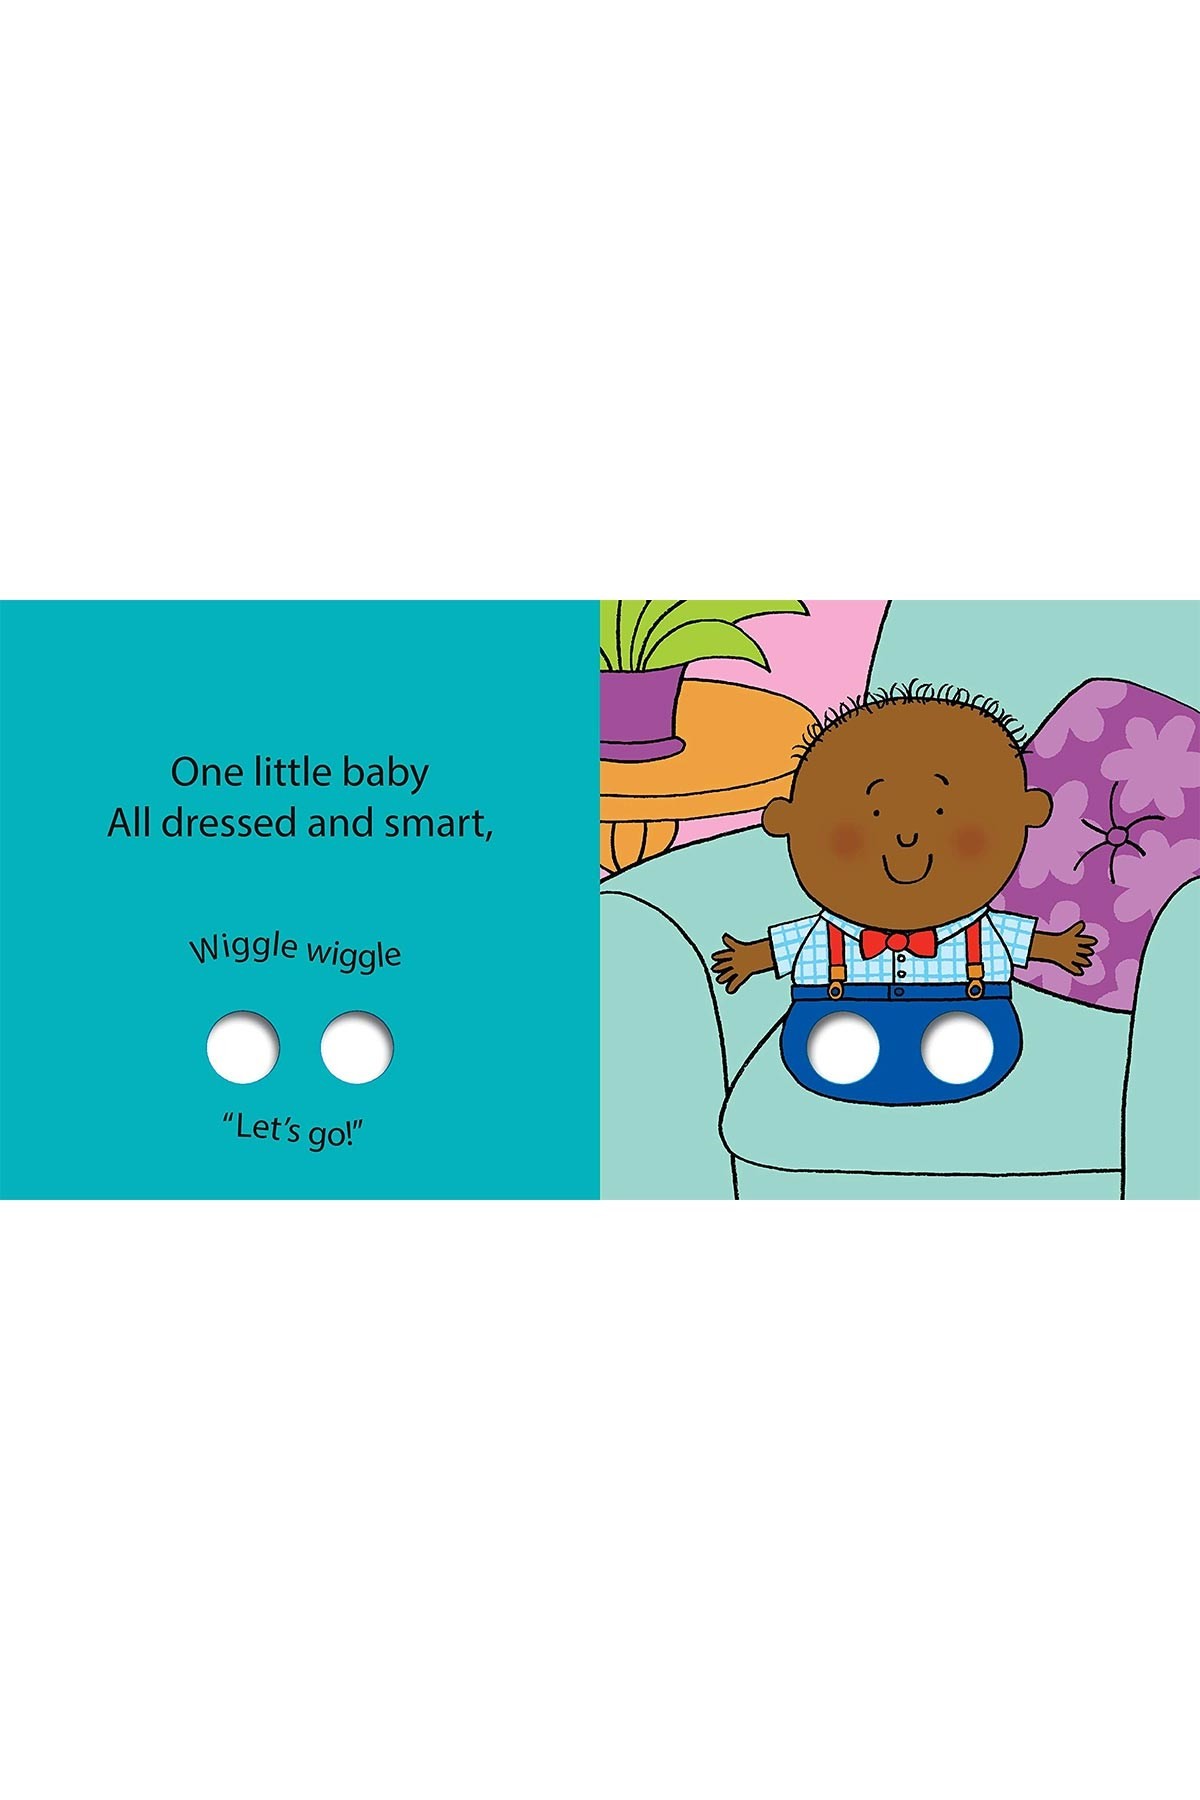 Walker Books Little Baby'S Busy Day Board Book